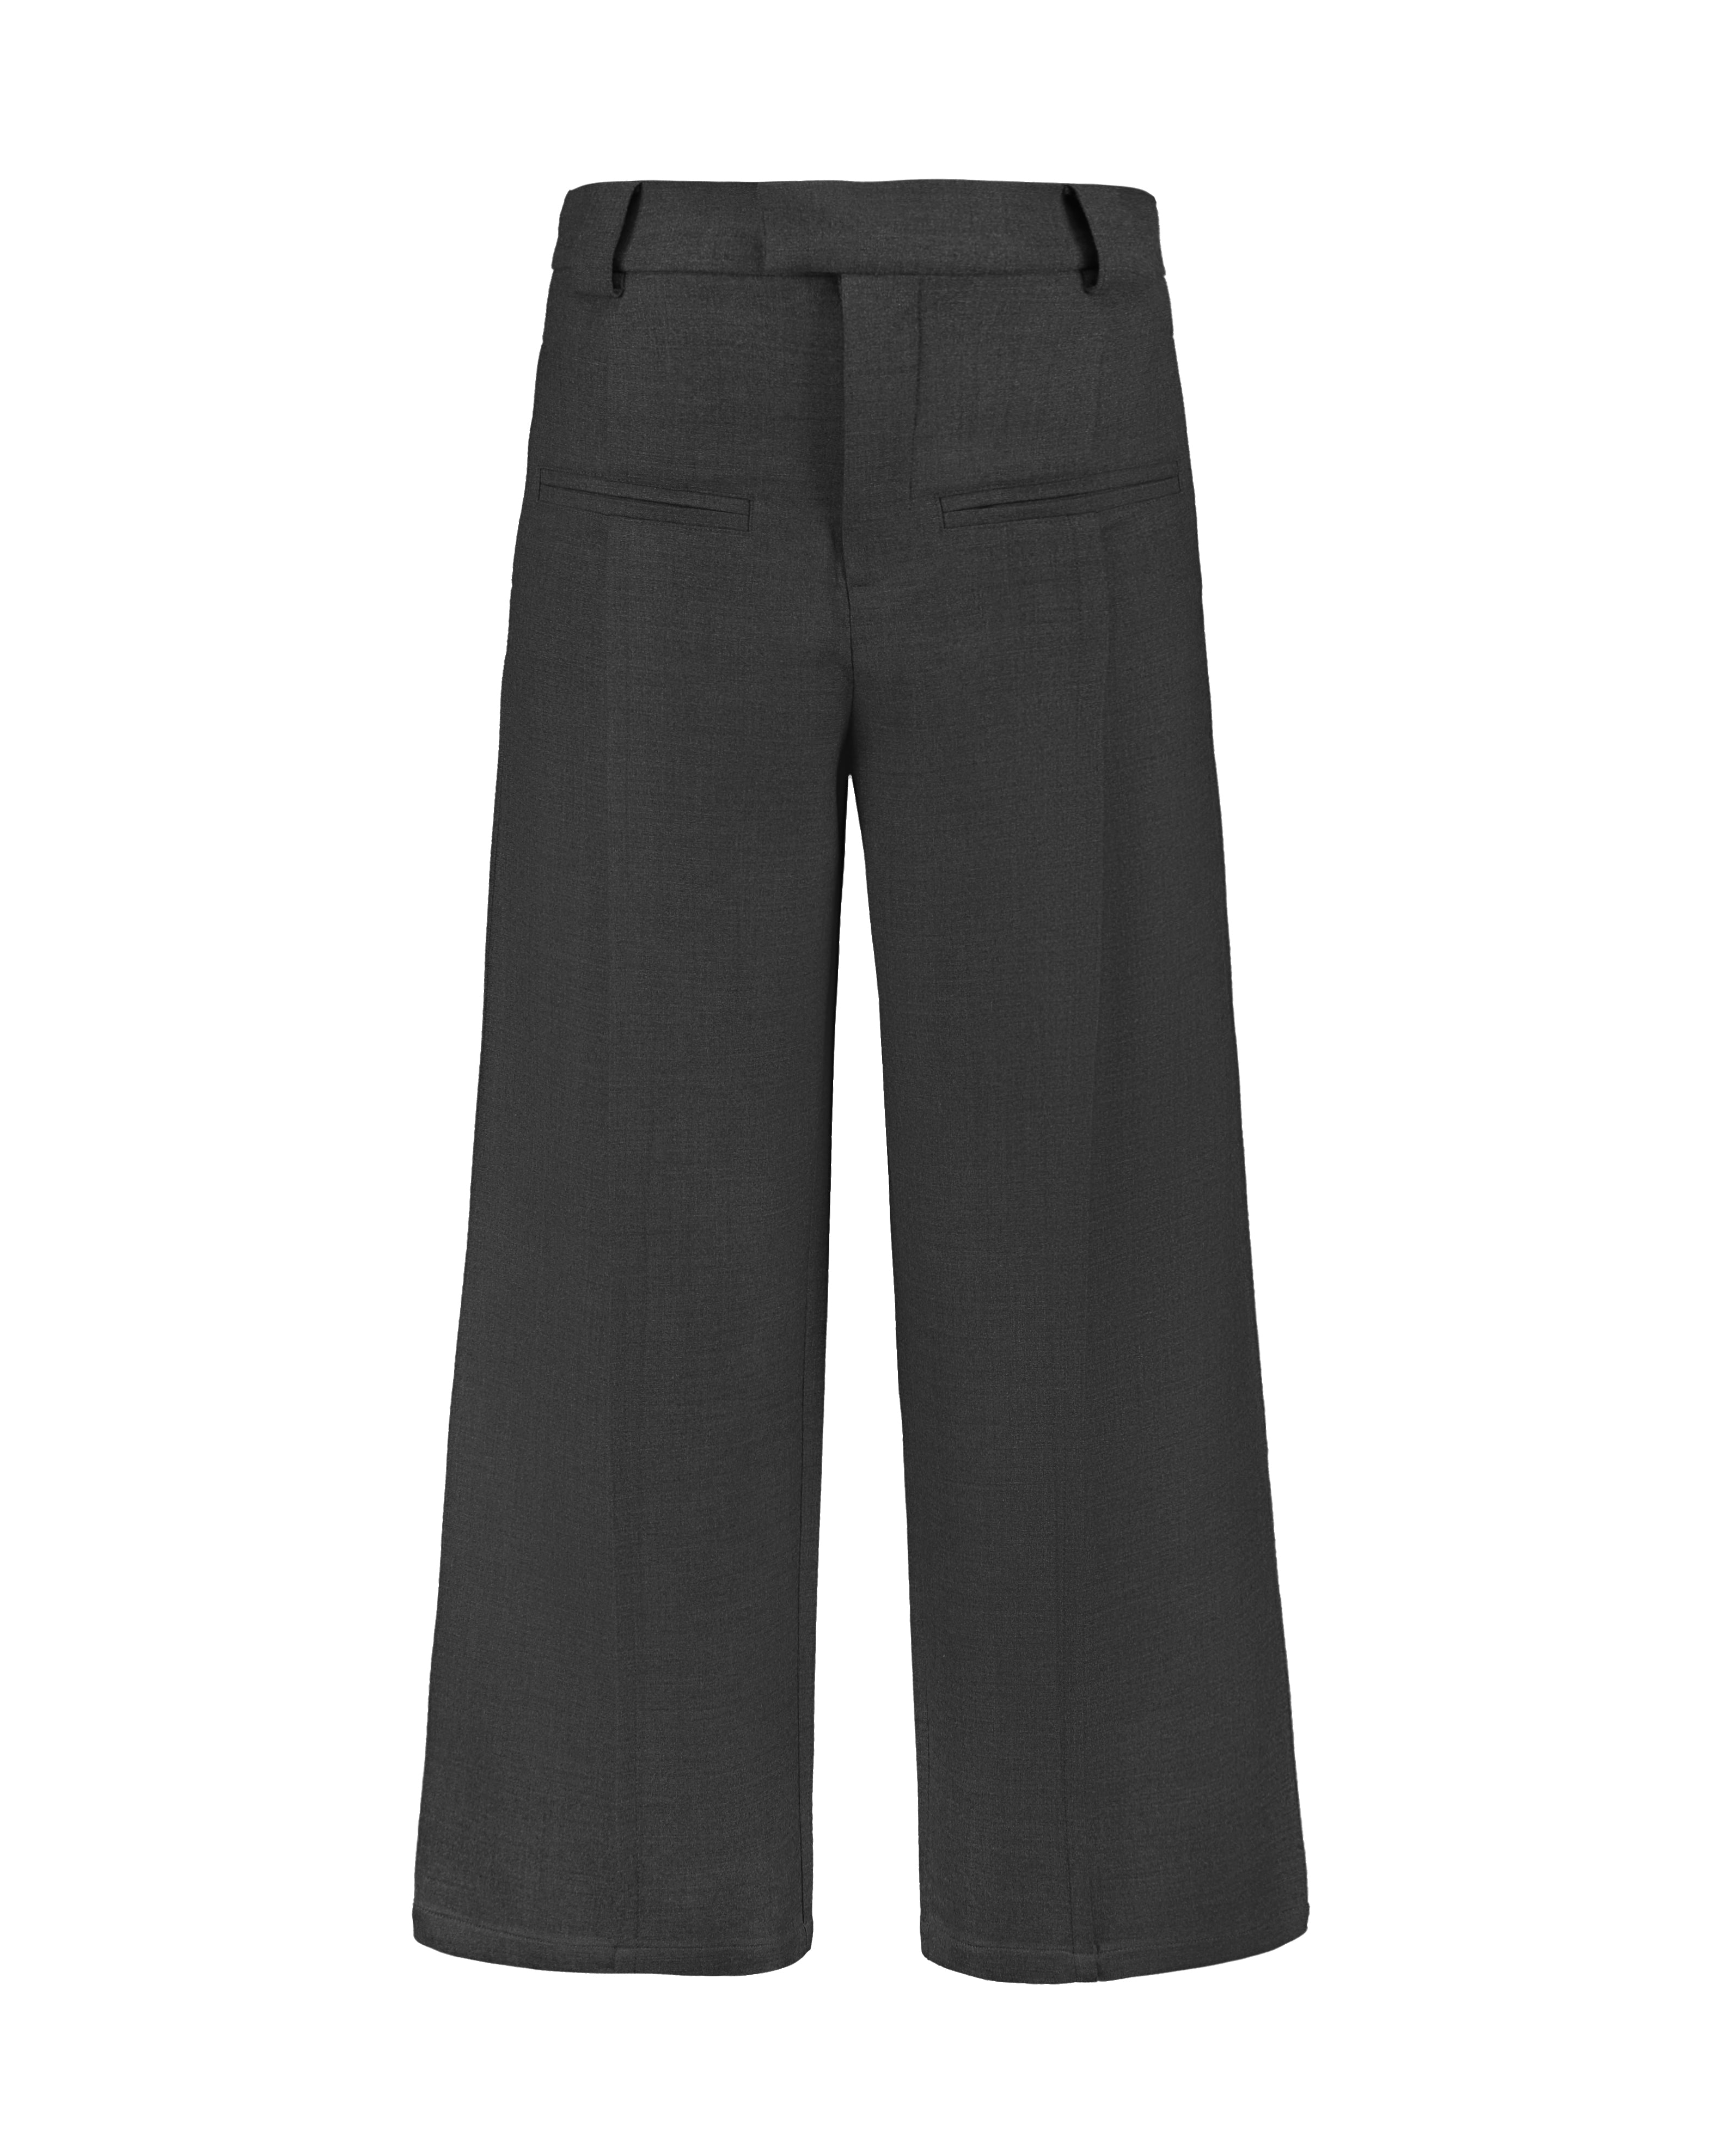 Fax Copy Express wide-leg suit pants (M)わたり35cm